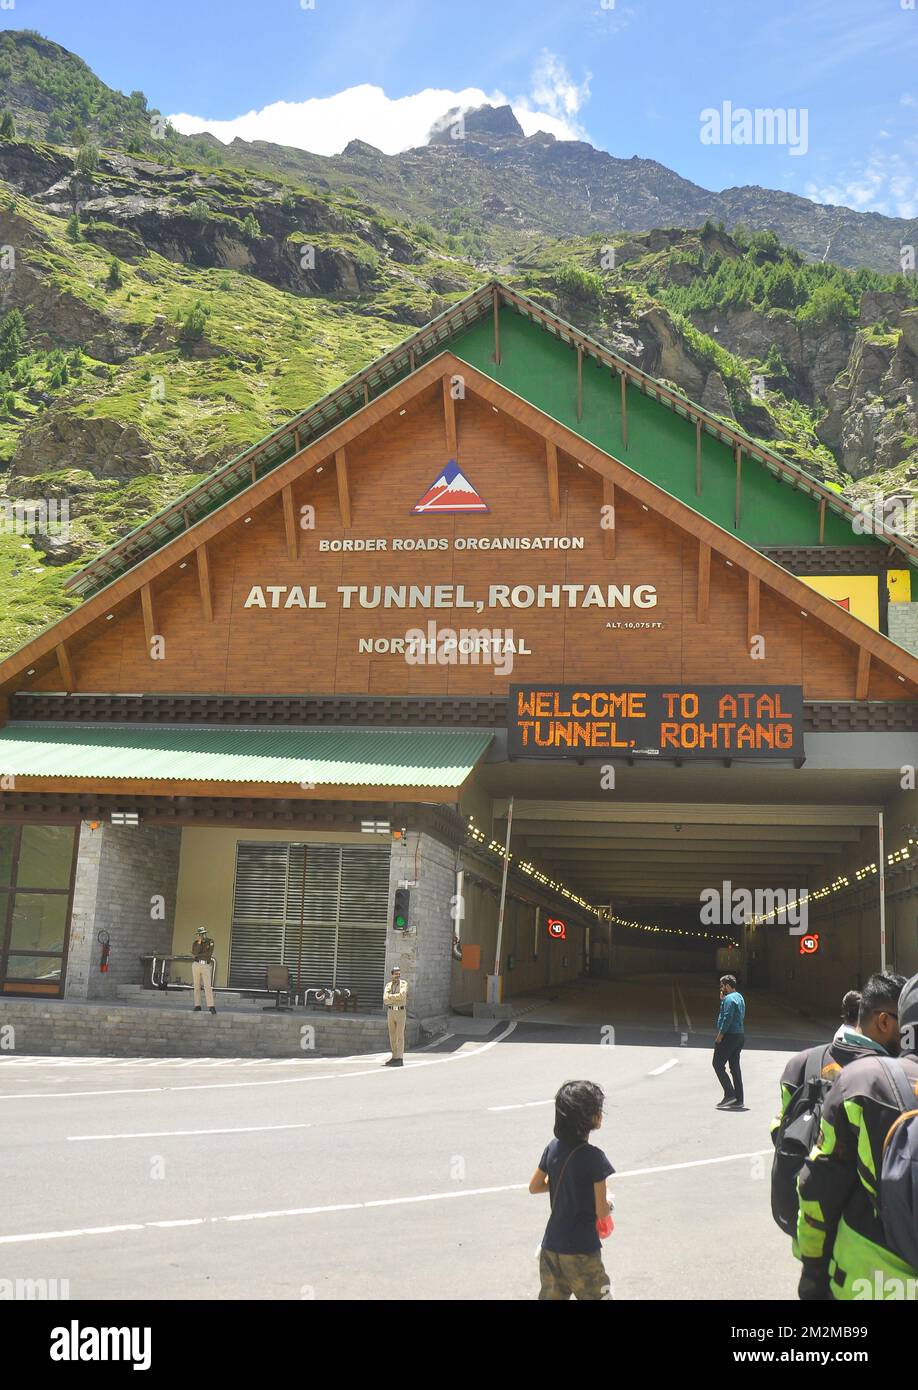 Rohtang, Manali, Himachal Pradesh, India - 25 2022 luglio: Tunnel Atal (Rohtang tunnel) che si trova in Leh-Manali autostrada. Il tunnel autostradale a tubo singolo più alto del mondo, a oltre 10.000 metri. Foto Stock